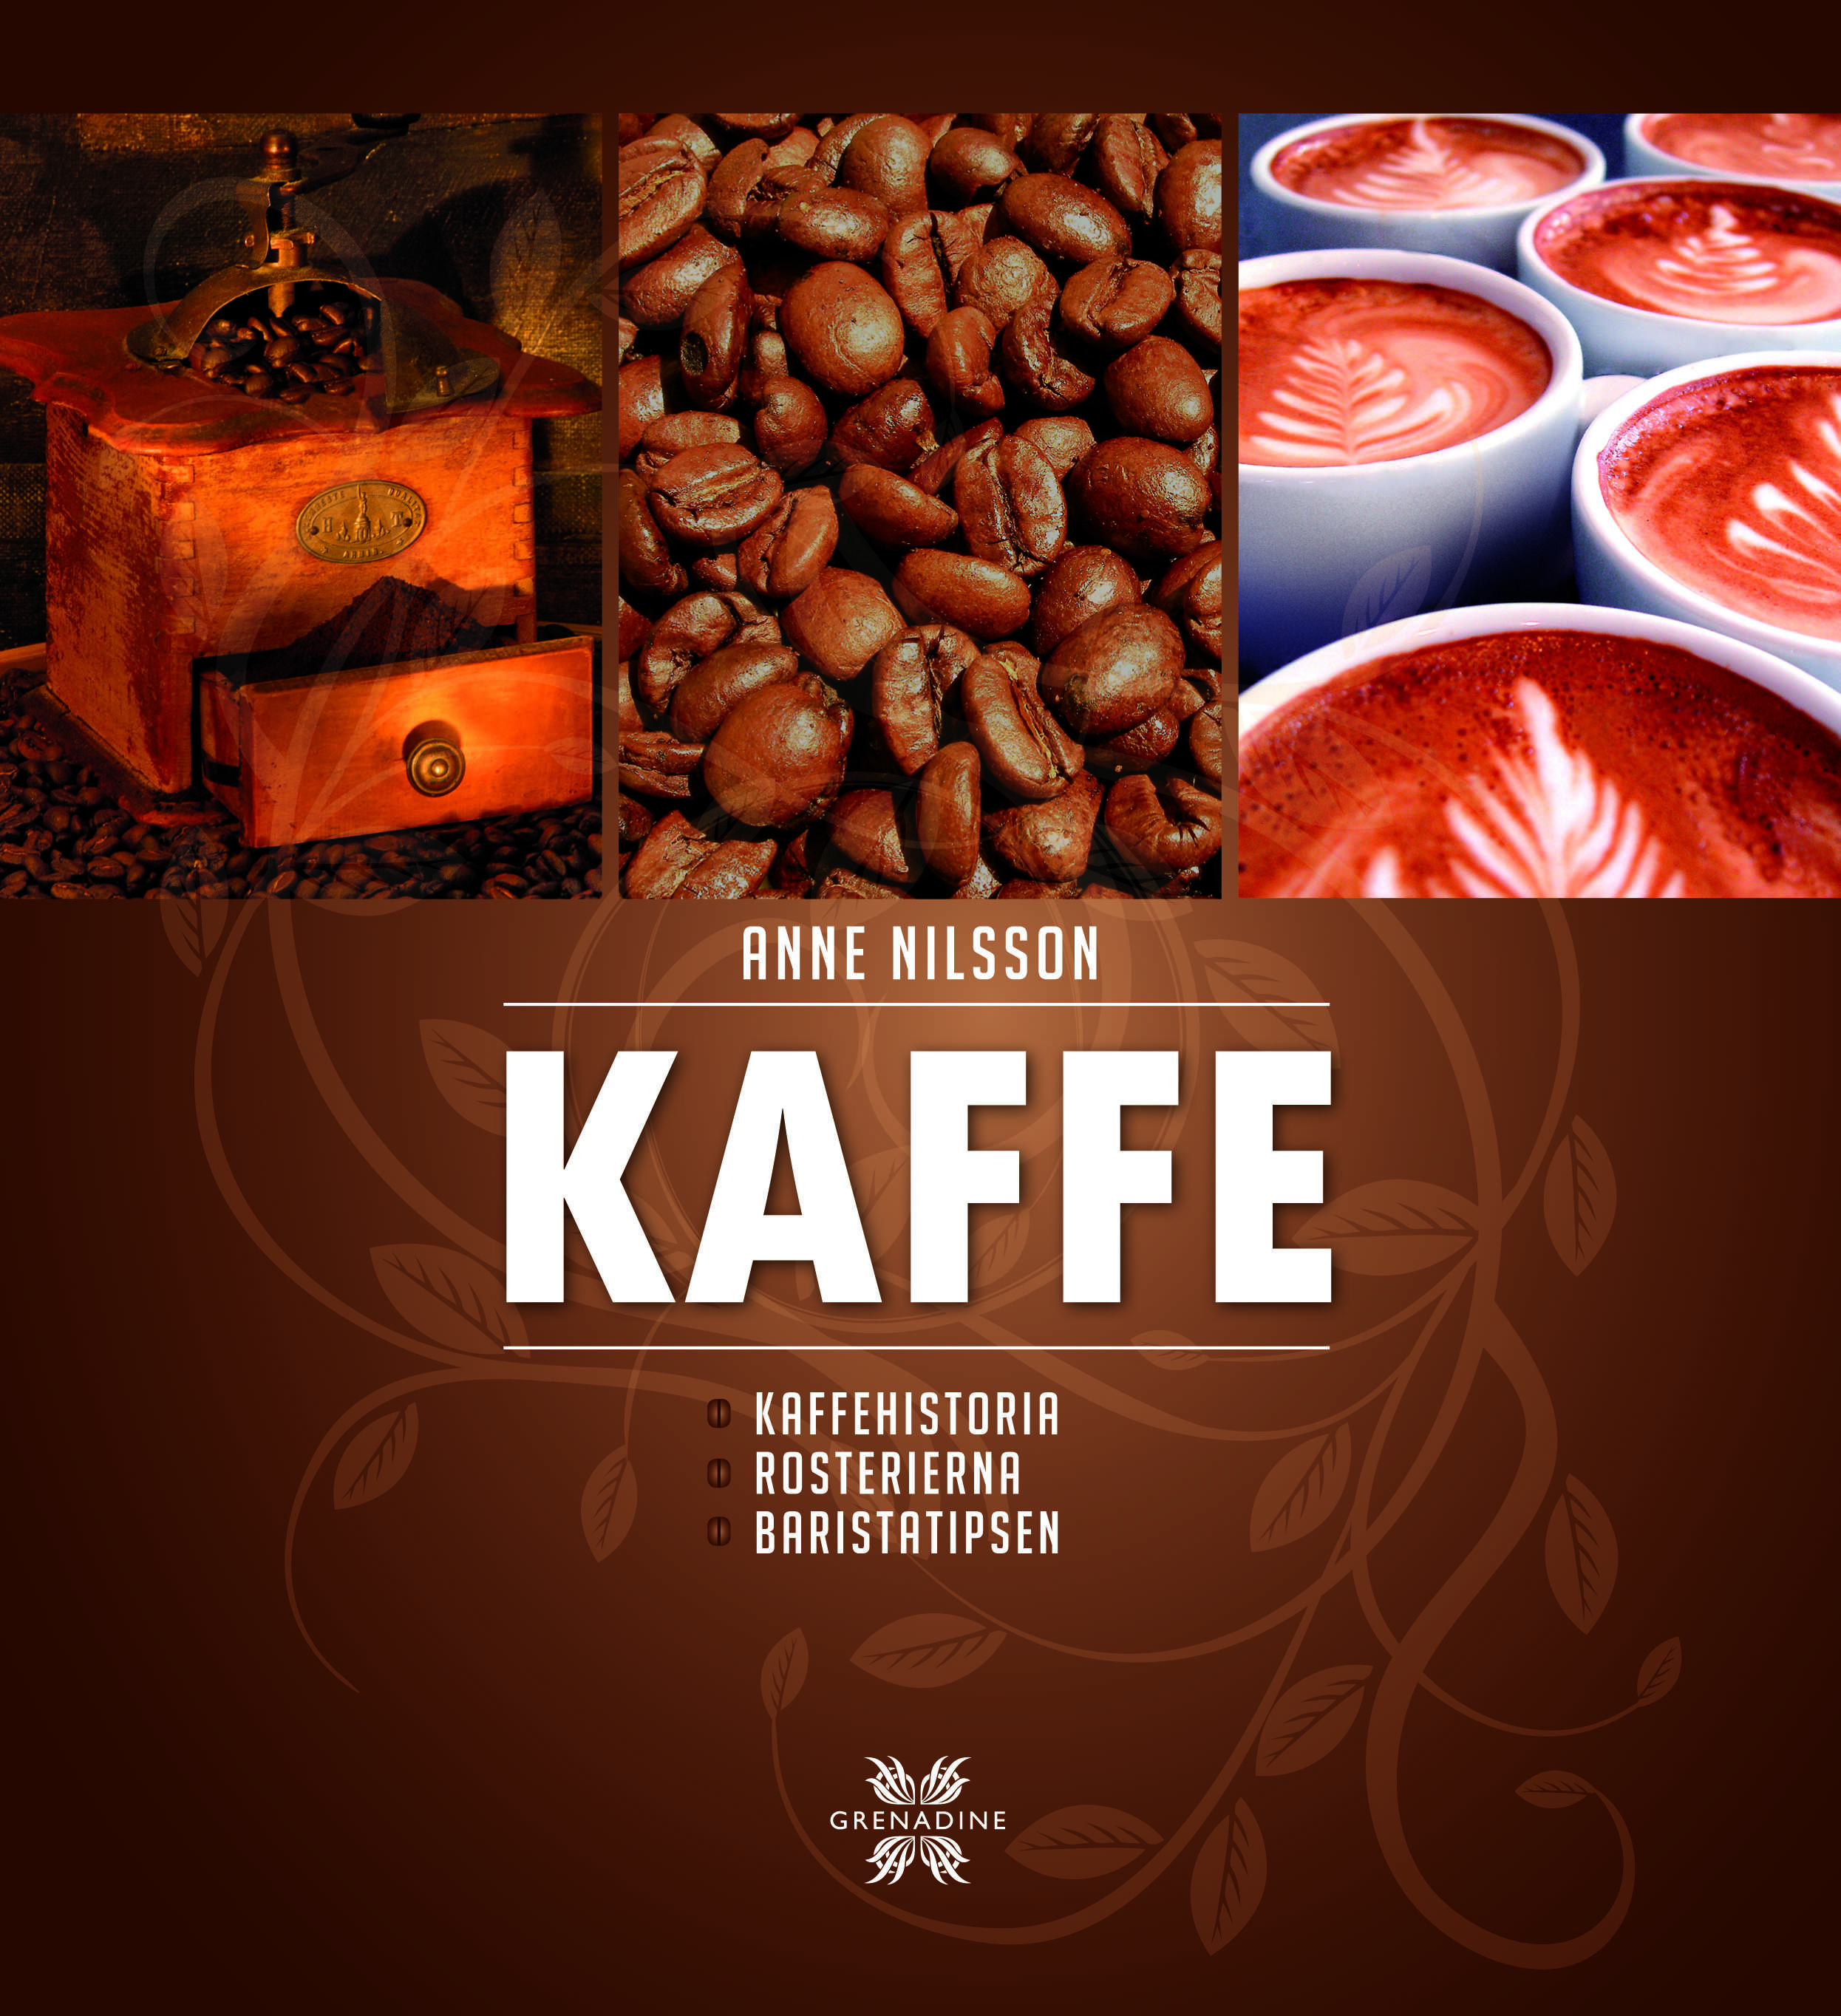 Omslag till boken "Kaffe" av författaren Anne Nilsson.